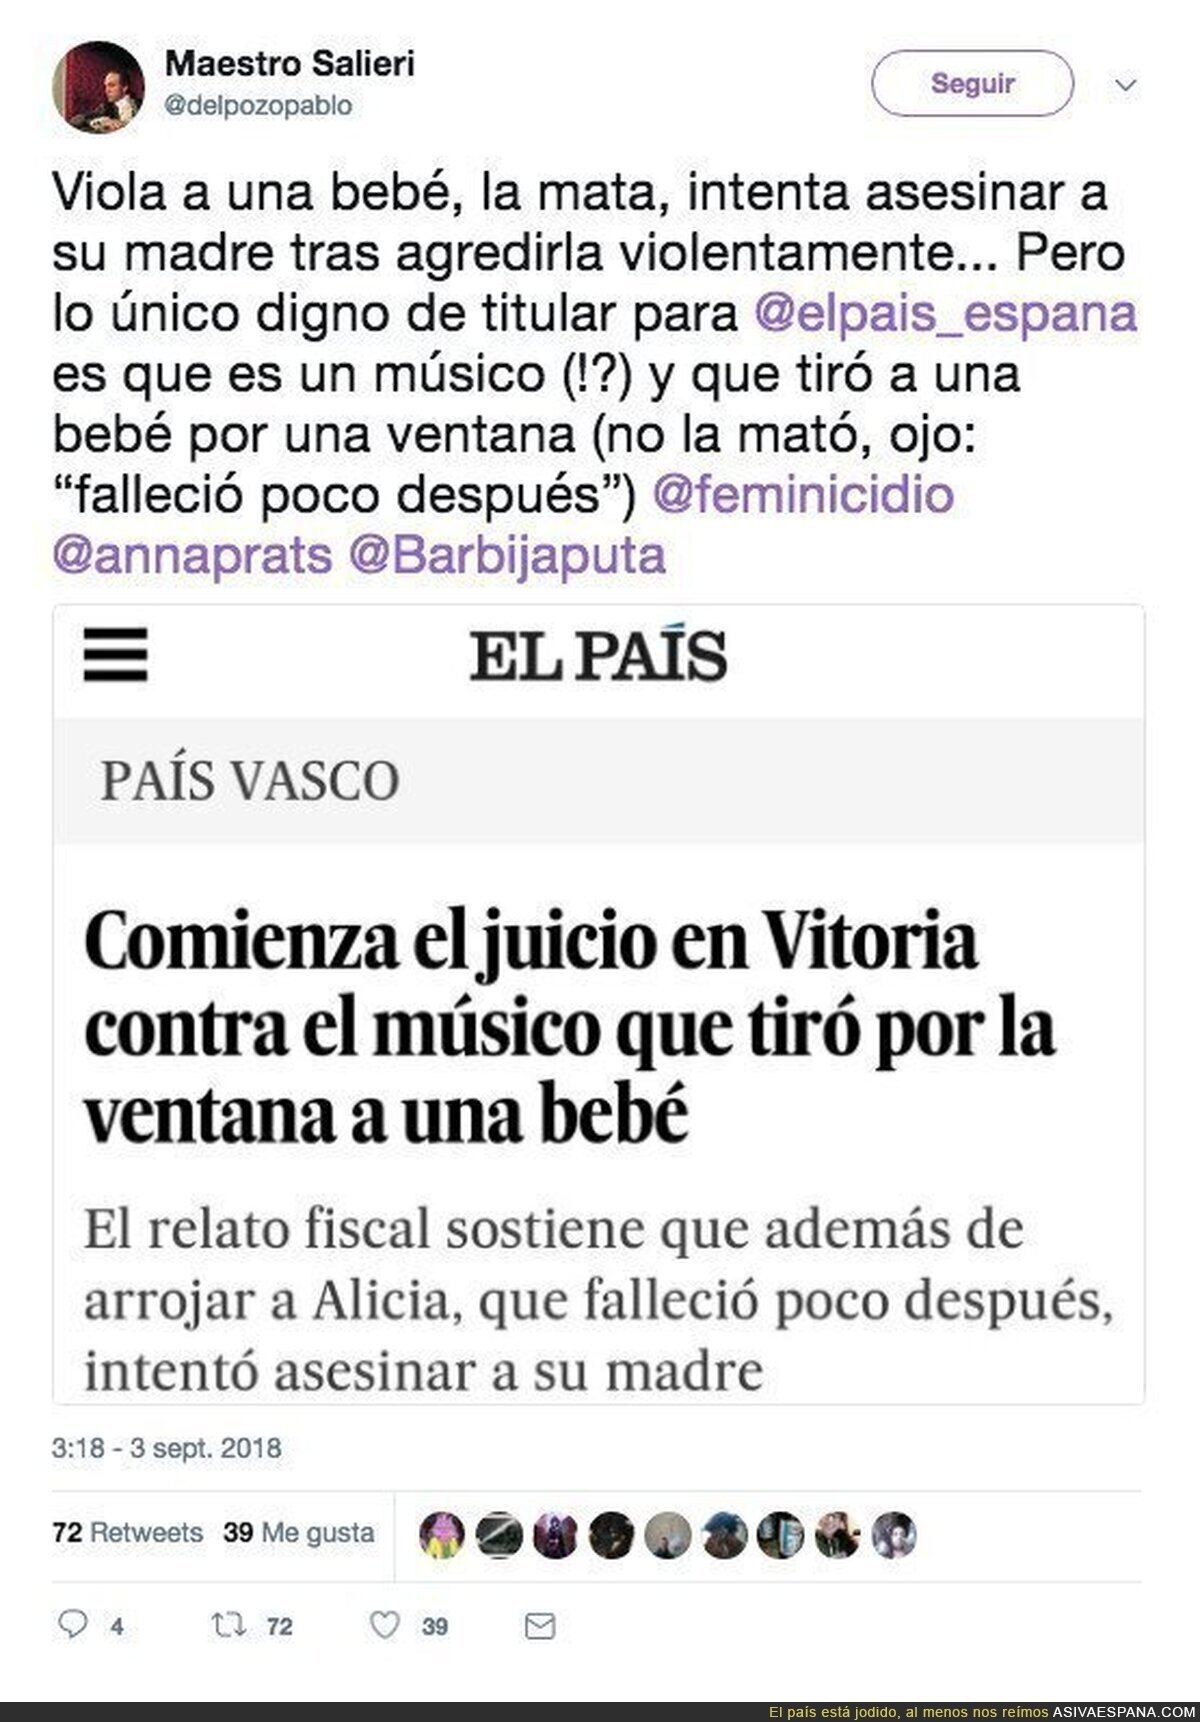 El País se ha coronado con la m*rda de titular de esta noticia